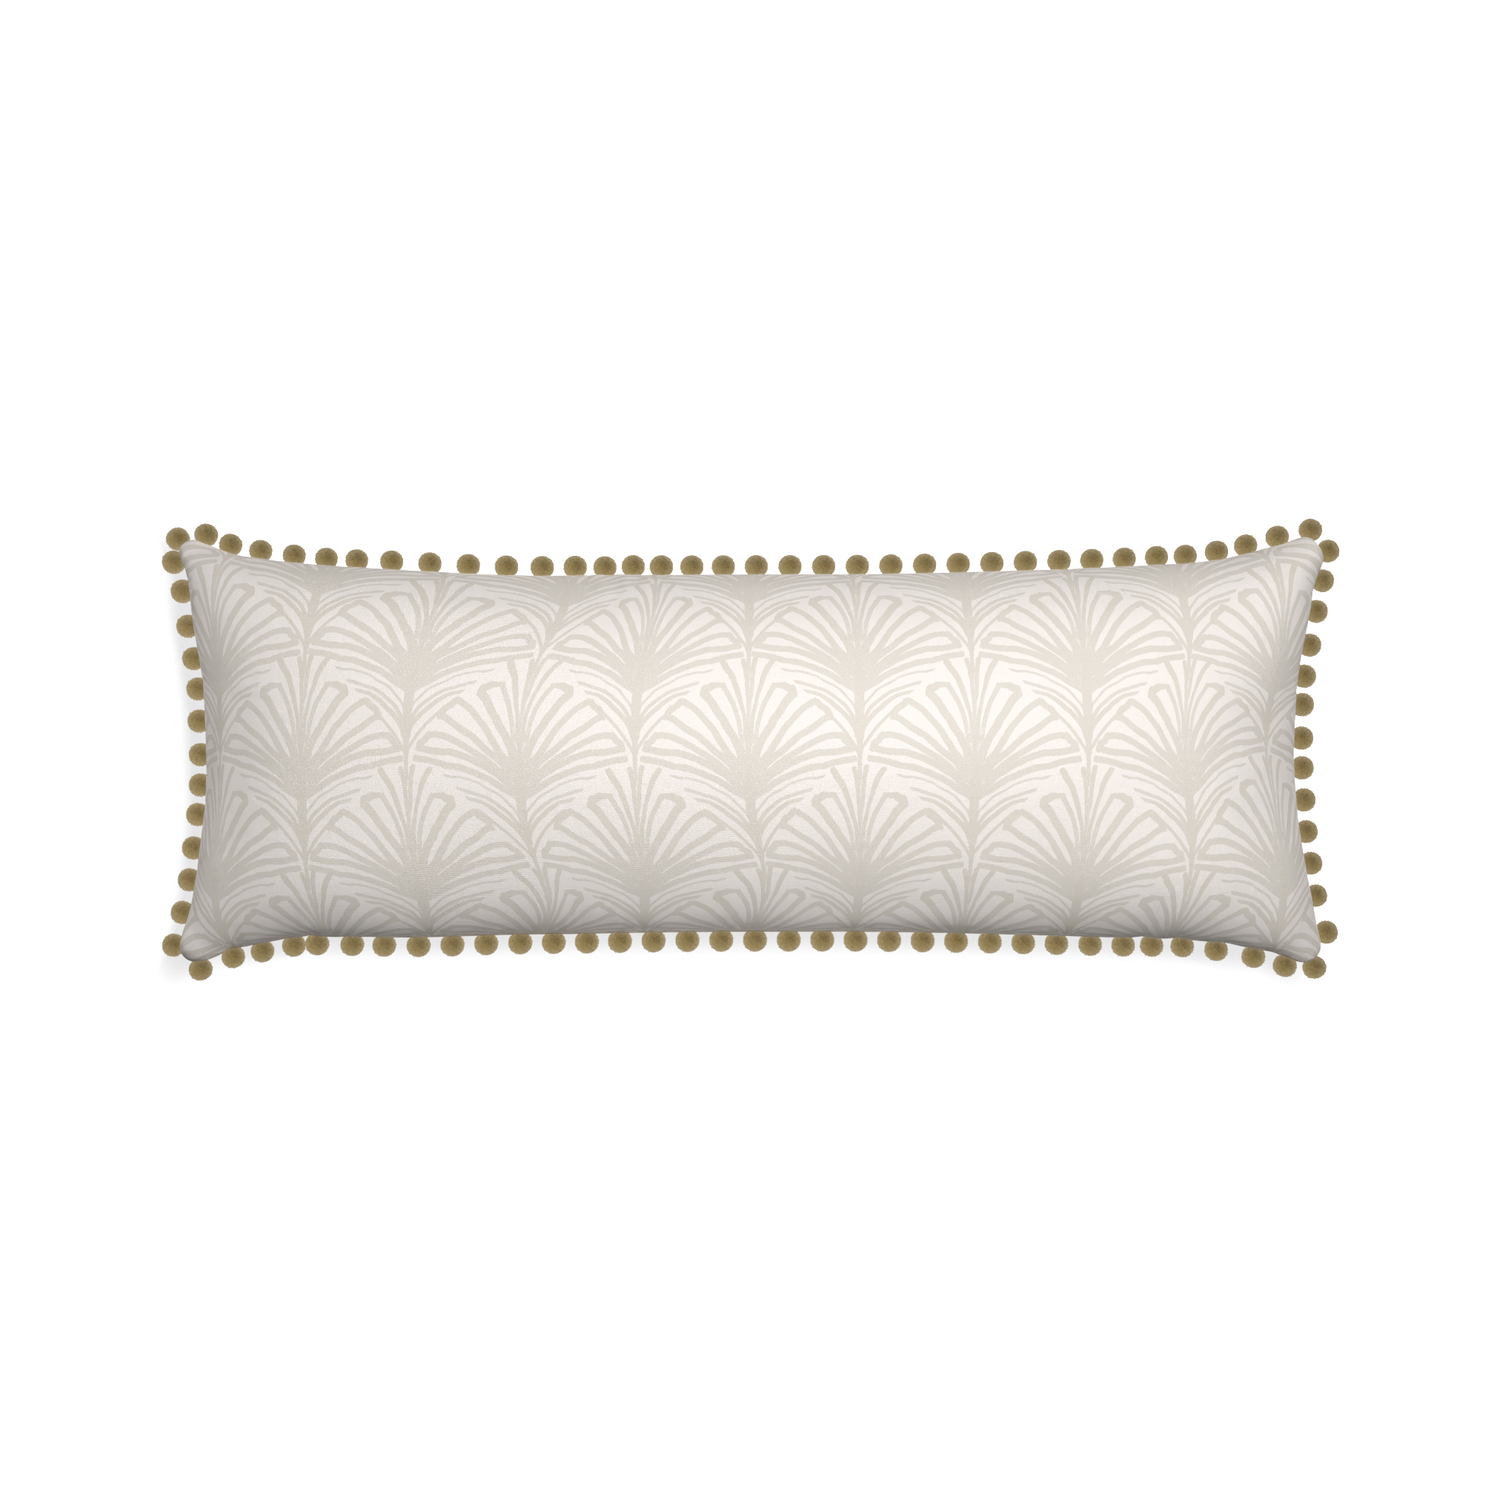 Xl-lumbar suzy sand custom pillow with olive pom pom on white background